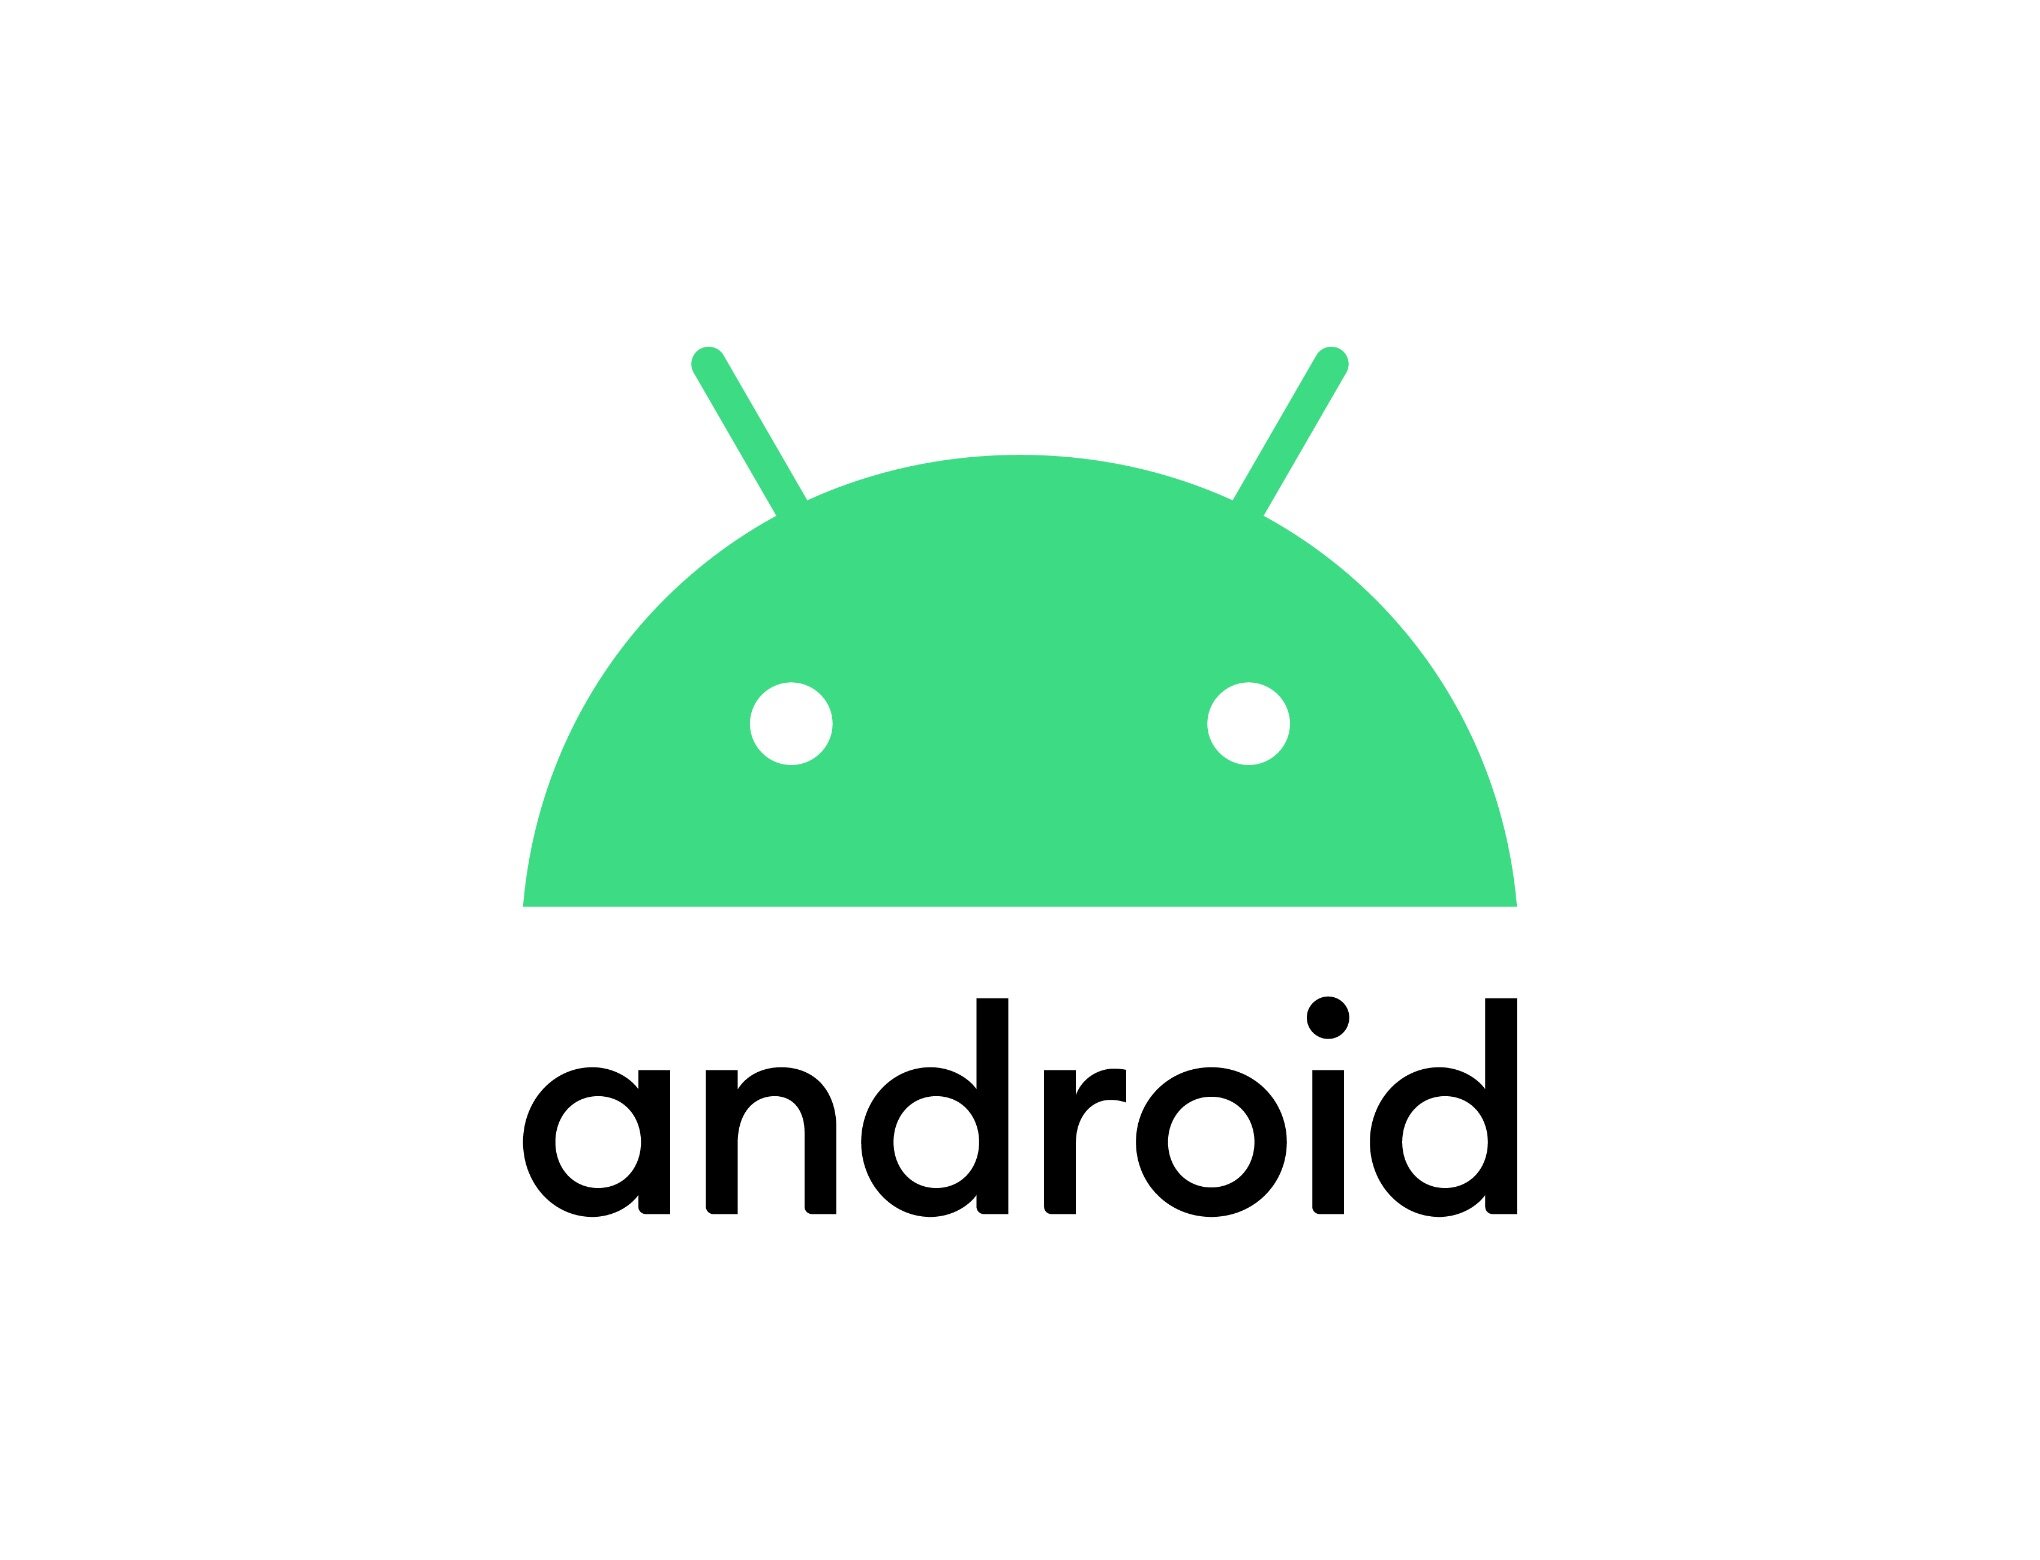 За сім місяців Android 10 змогла зайняти лише 8,2% ринку, лідирує Android 9 з часткою 31,3% - ITC.ua